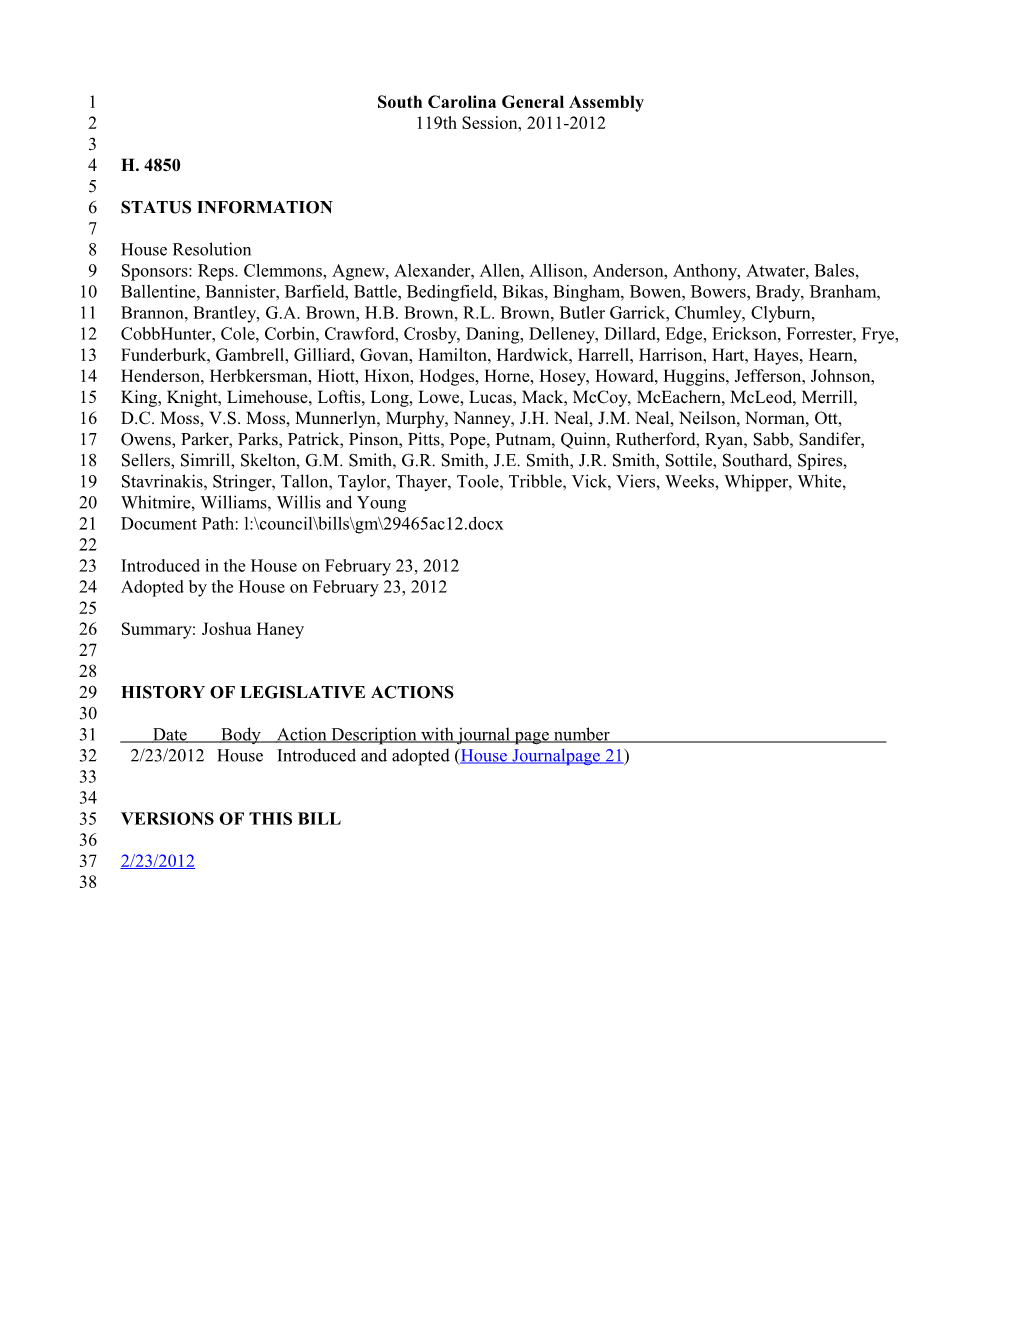 2011-2012 Bill 4850: Joshua Haney - South Carolina Legislature Online